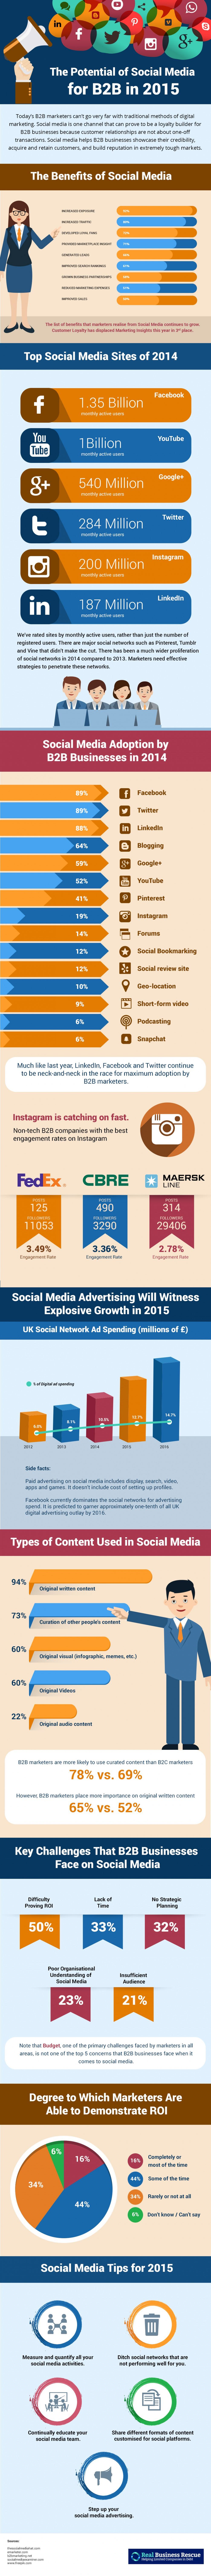 social-media-b2b-stats